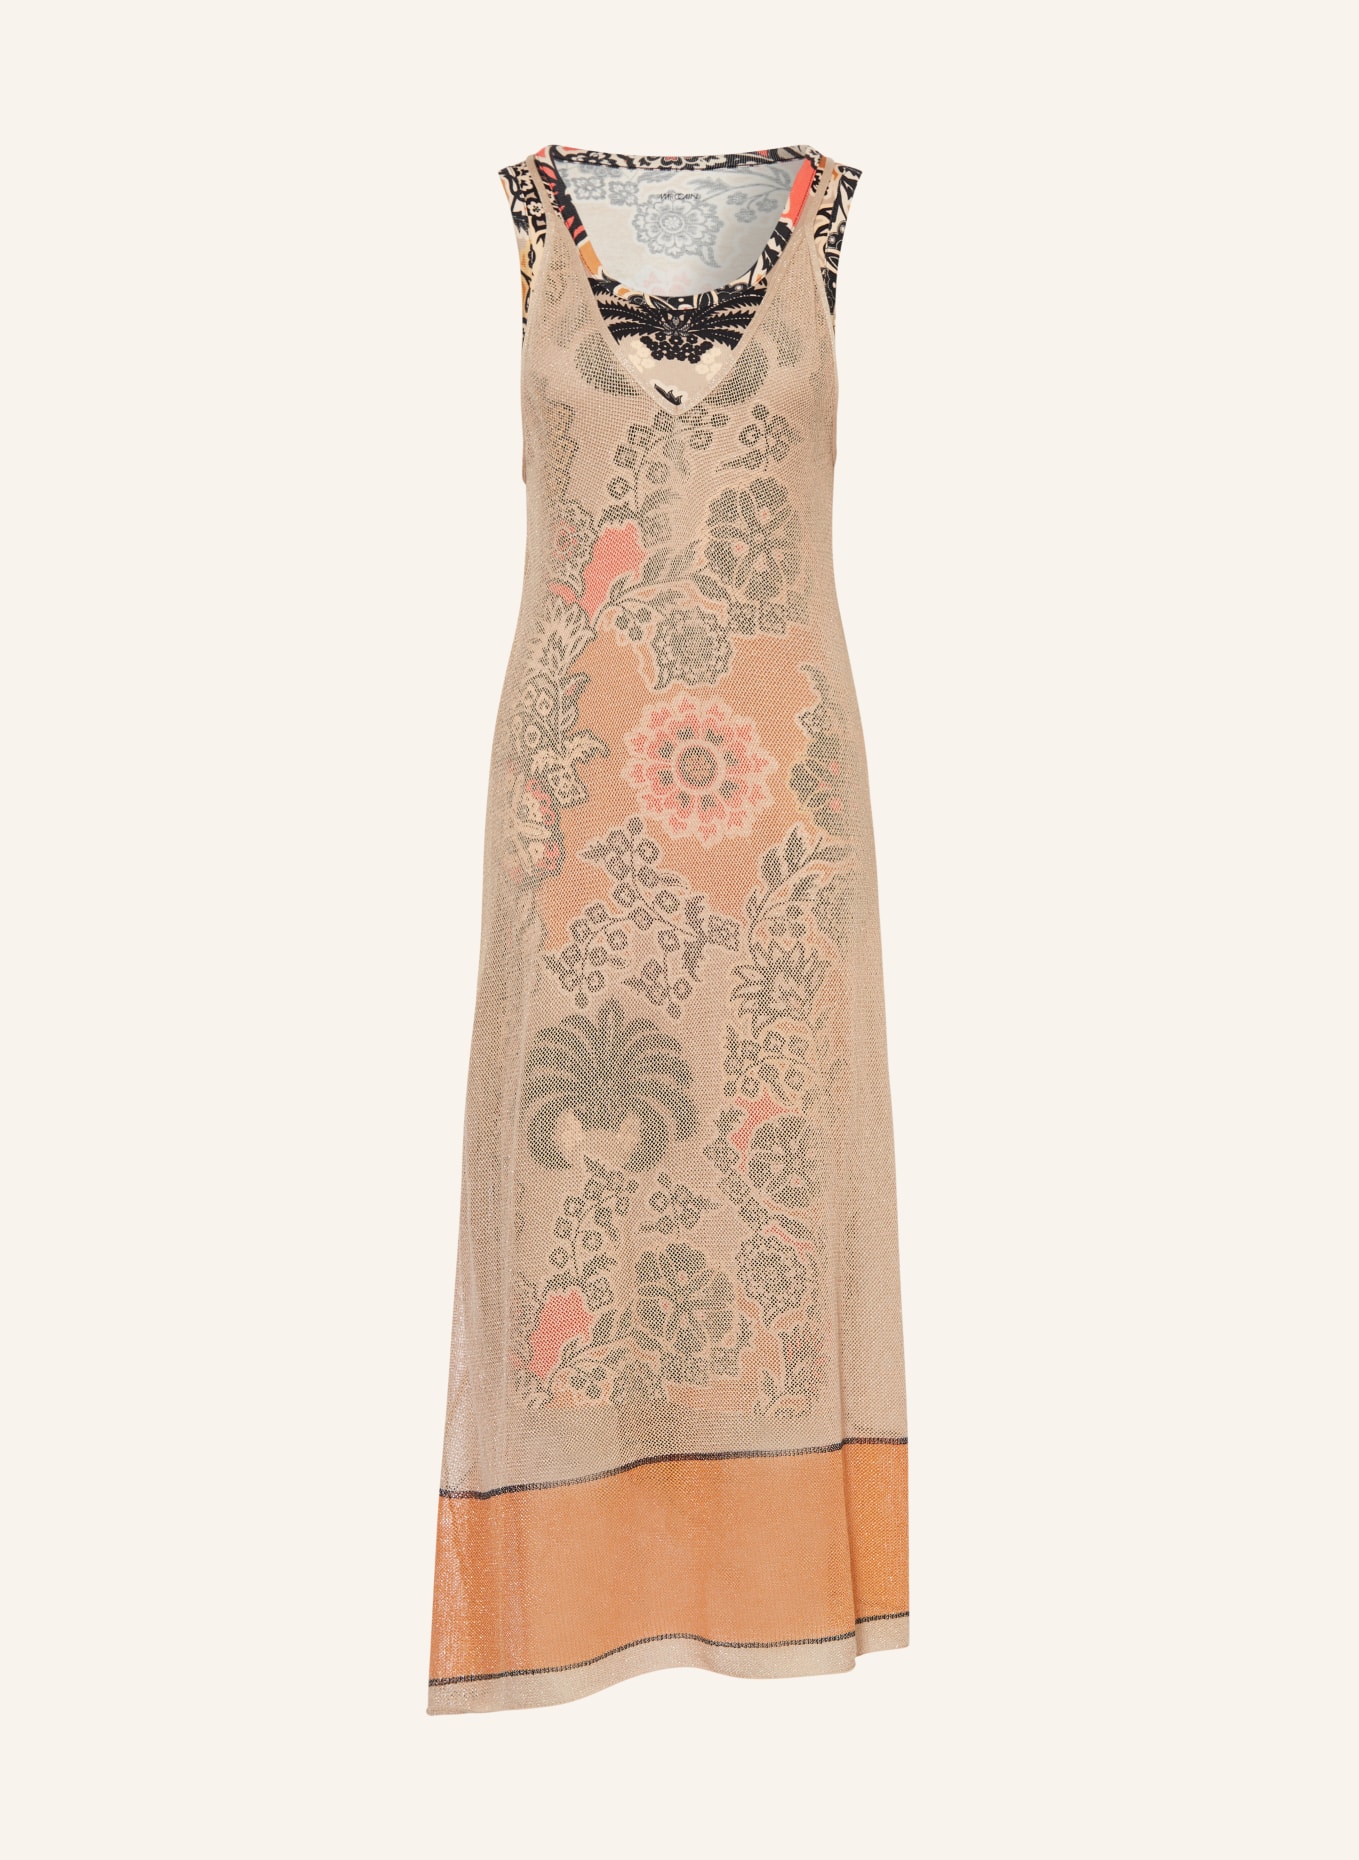 MARC CAIN Knit dress, Color: 616 deep sand (Image 1)